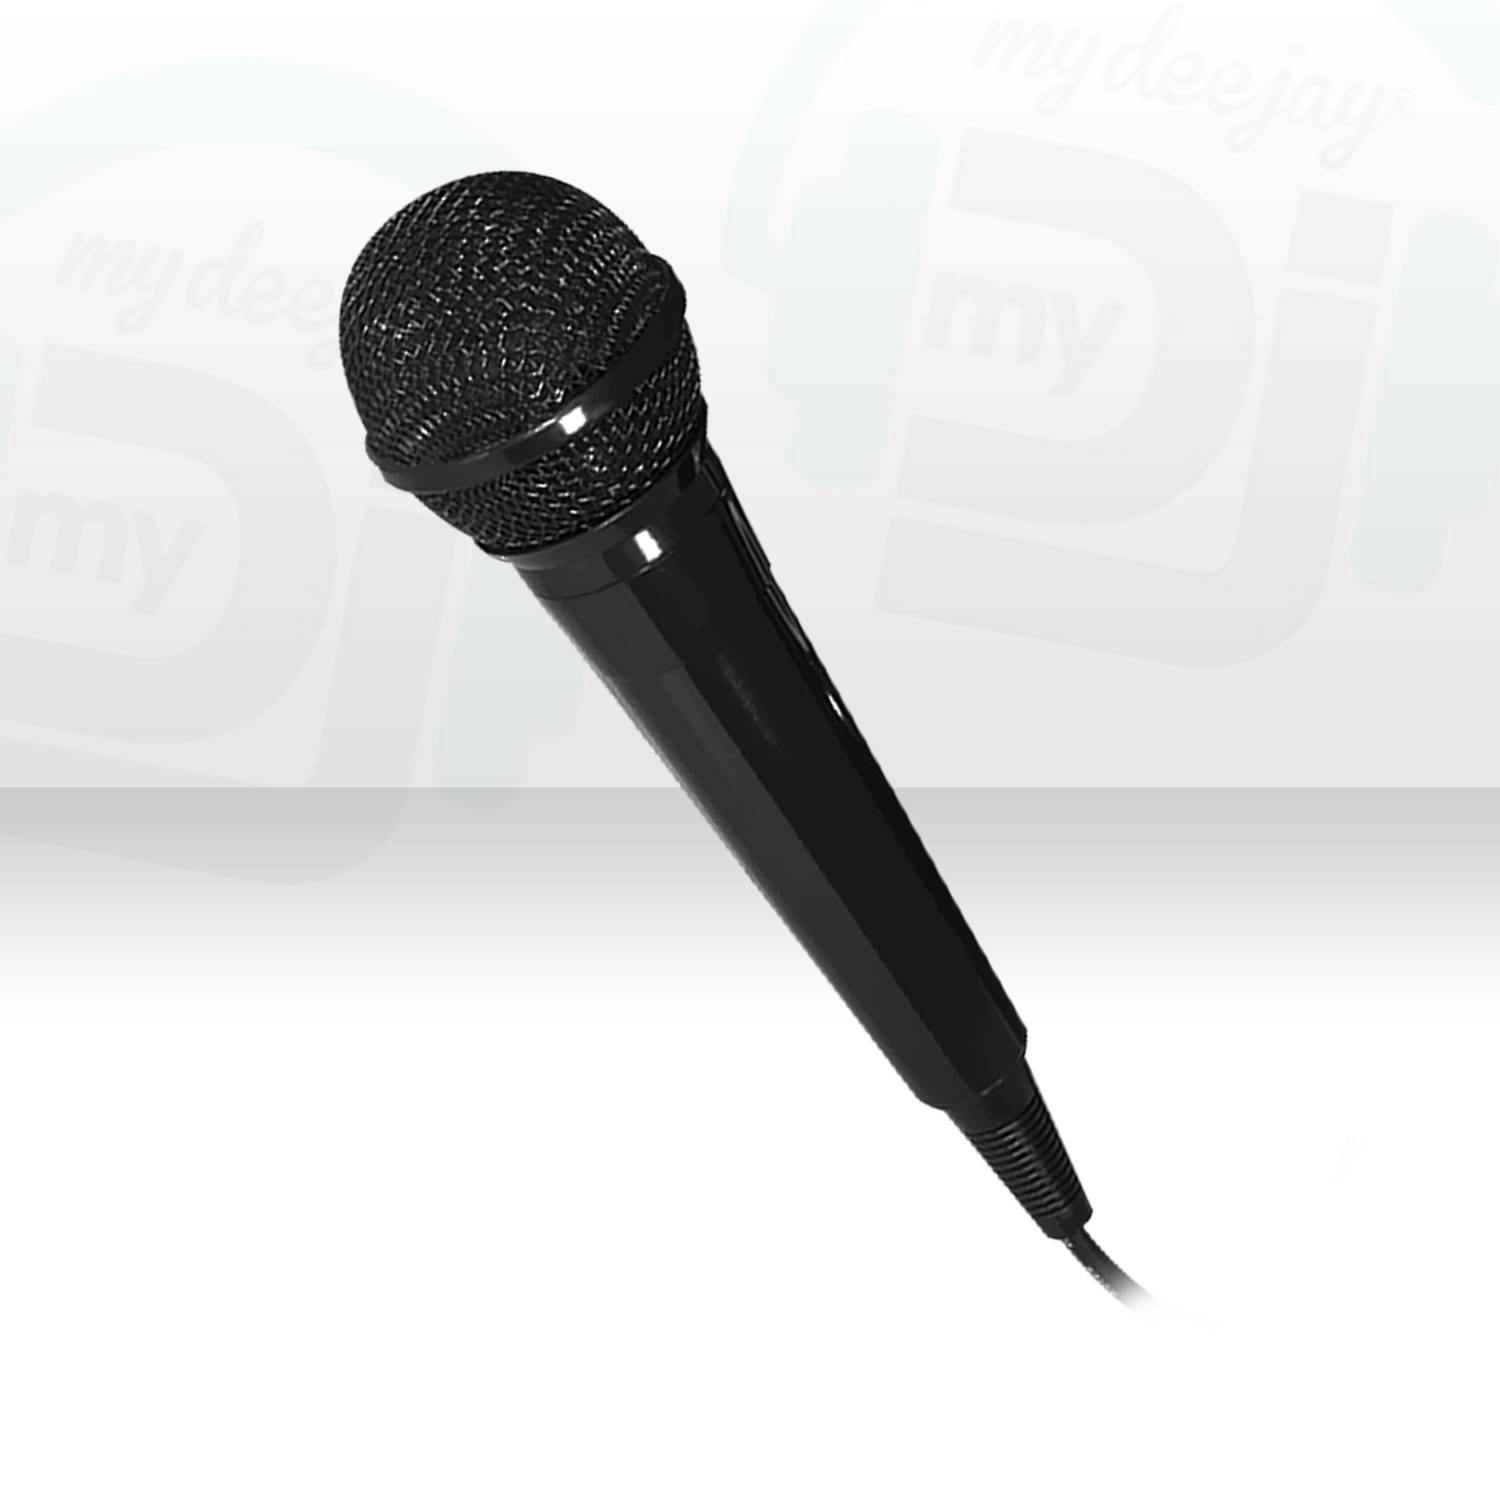 Microphone karaoké filaire Mr Entertainer - XLR - Jack 6,35 mm